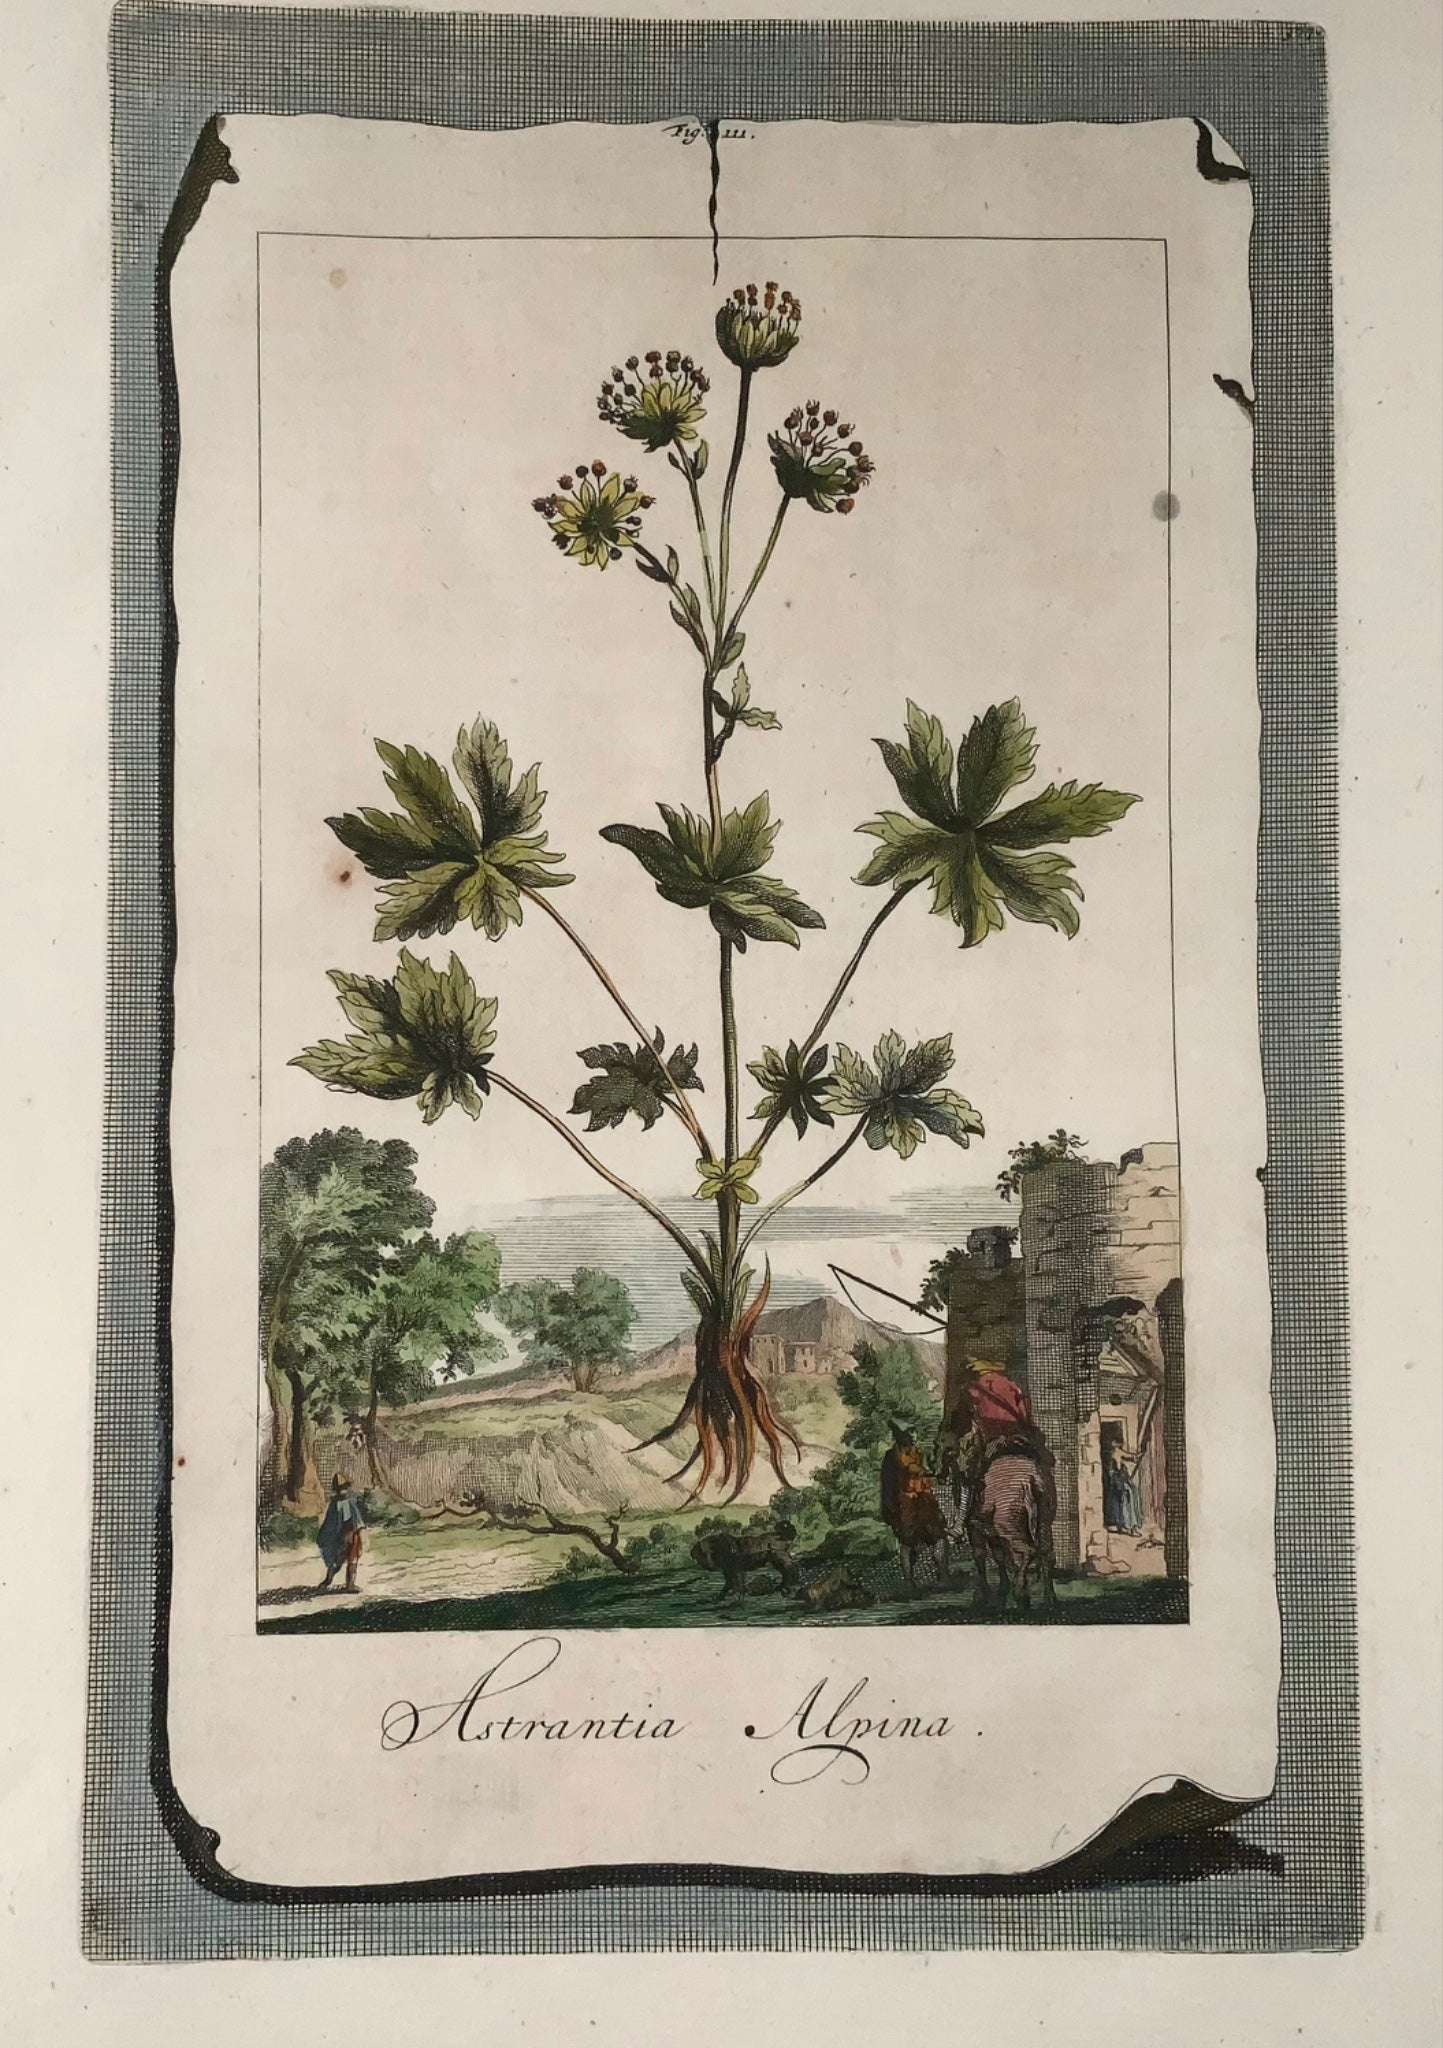 1696 Astrantia Alpina, large folio, botany, Abraham Munting, large folio